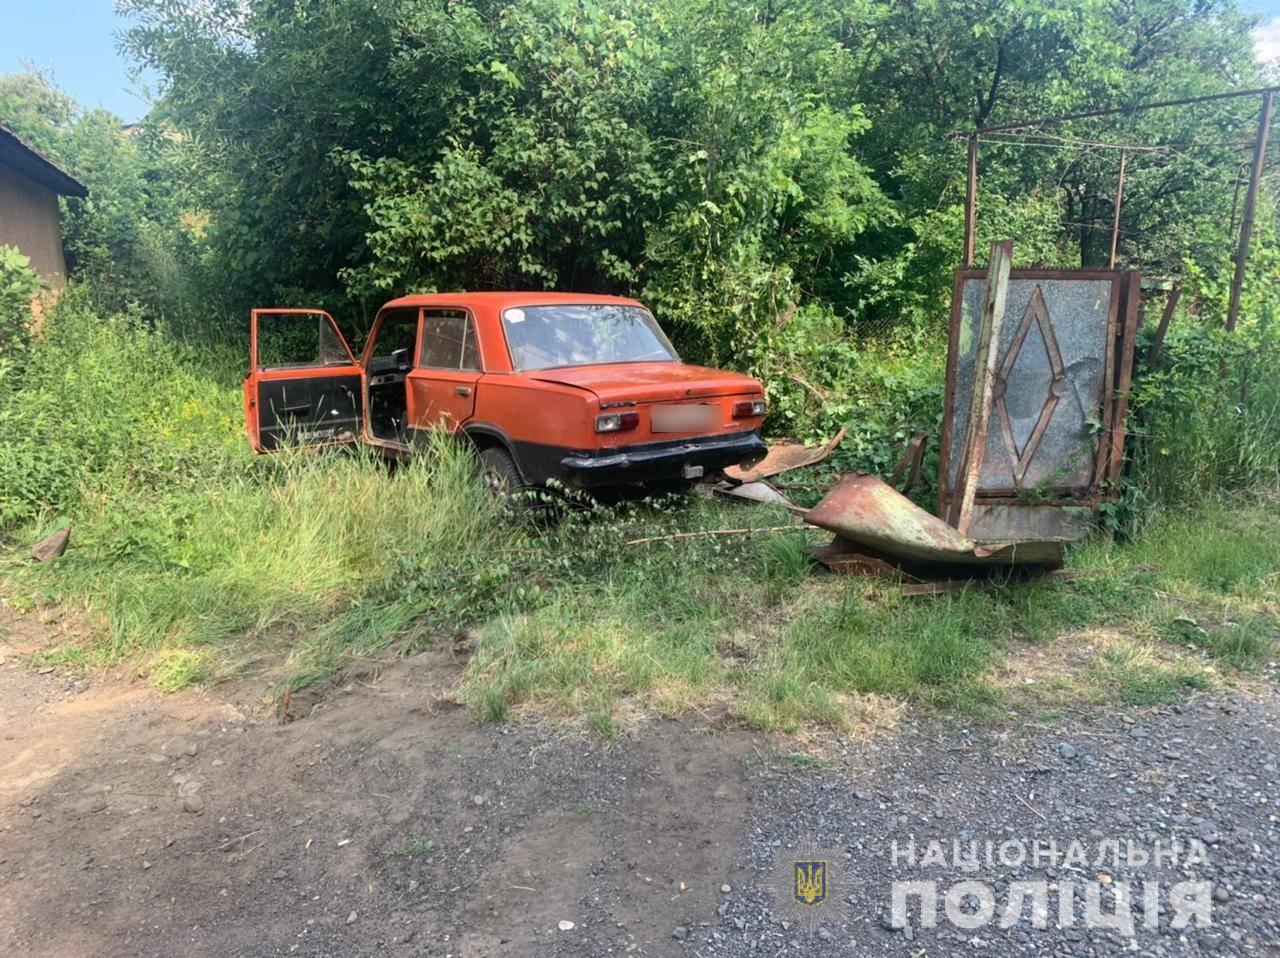 Вчора, 12 червня, вранці до поліції надійшло повідомлення про дорожньо-транспортну пригоду у селищі Чинадієво Мукачівського району Закарпатської області.

